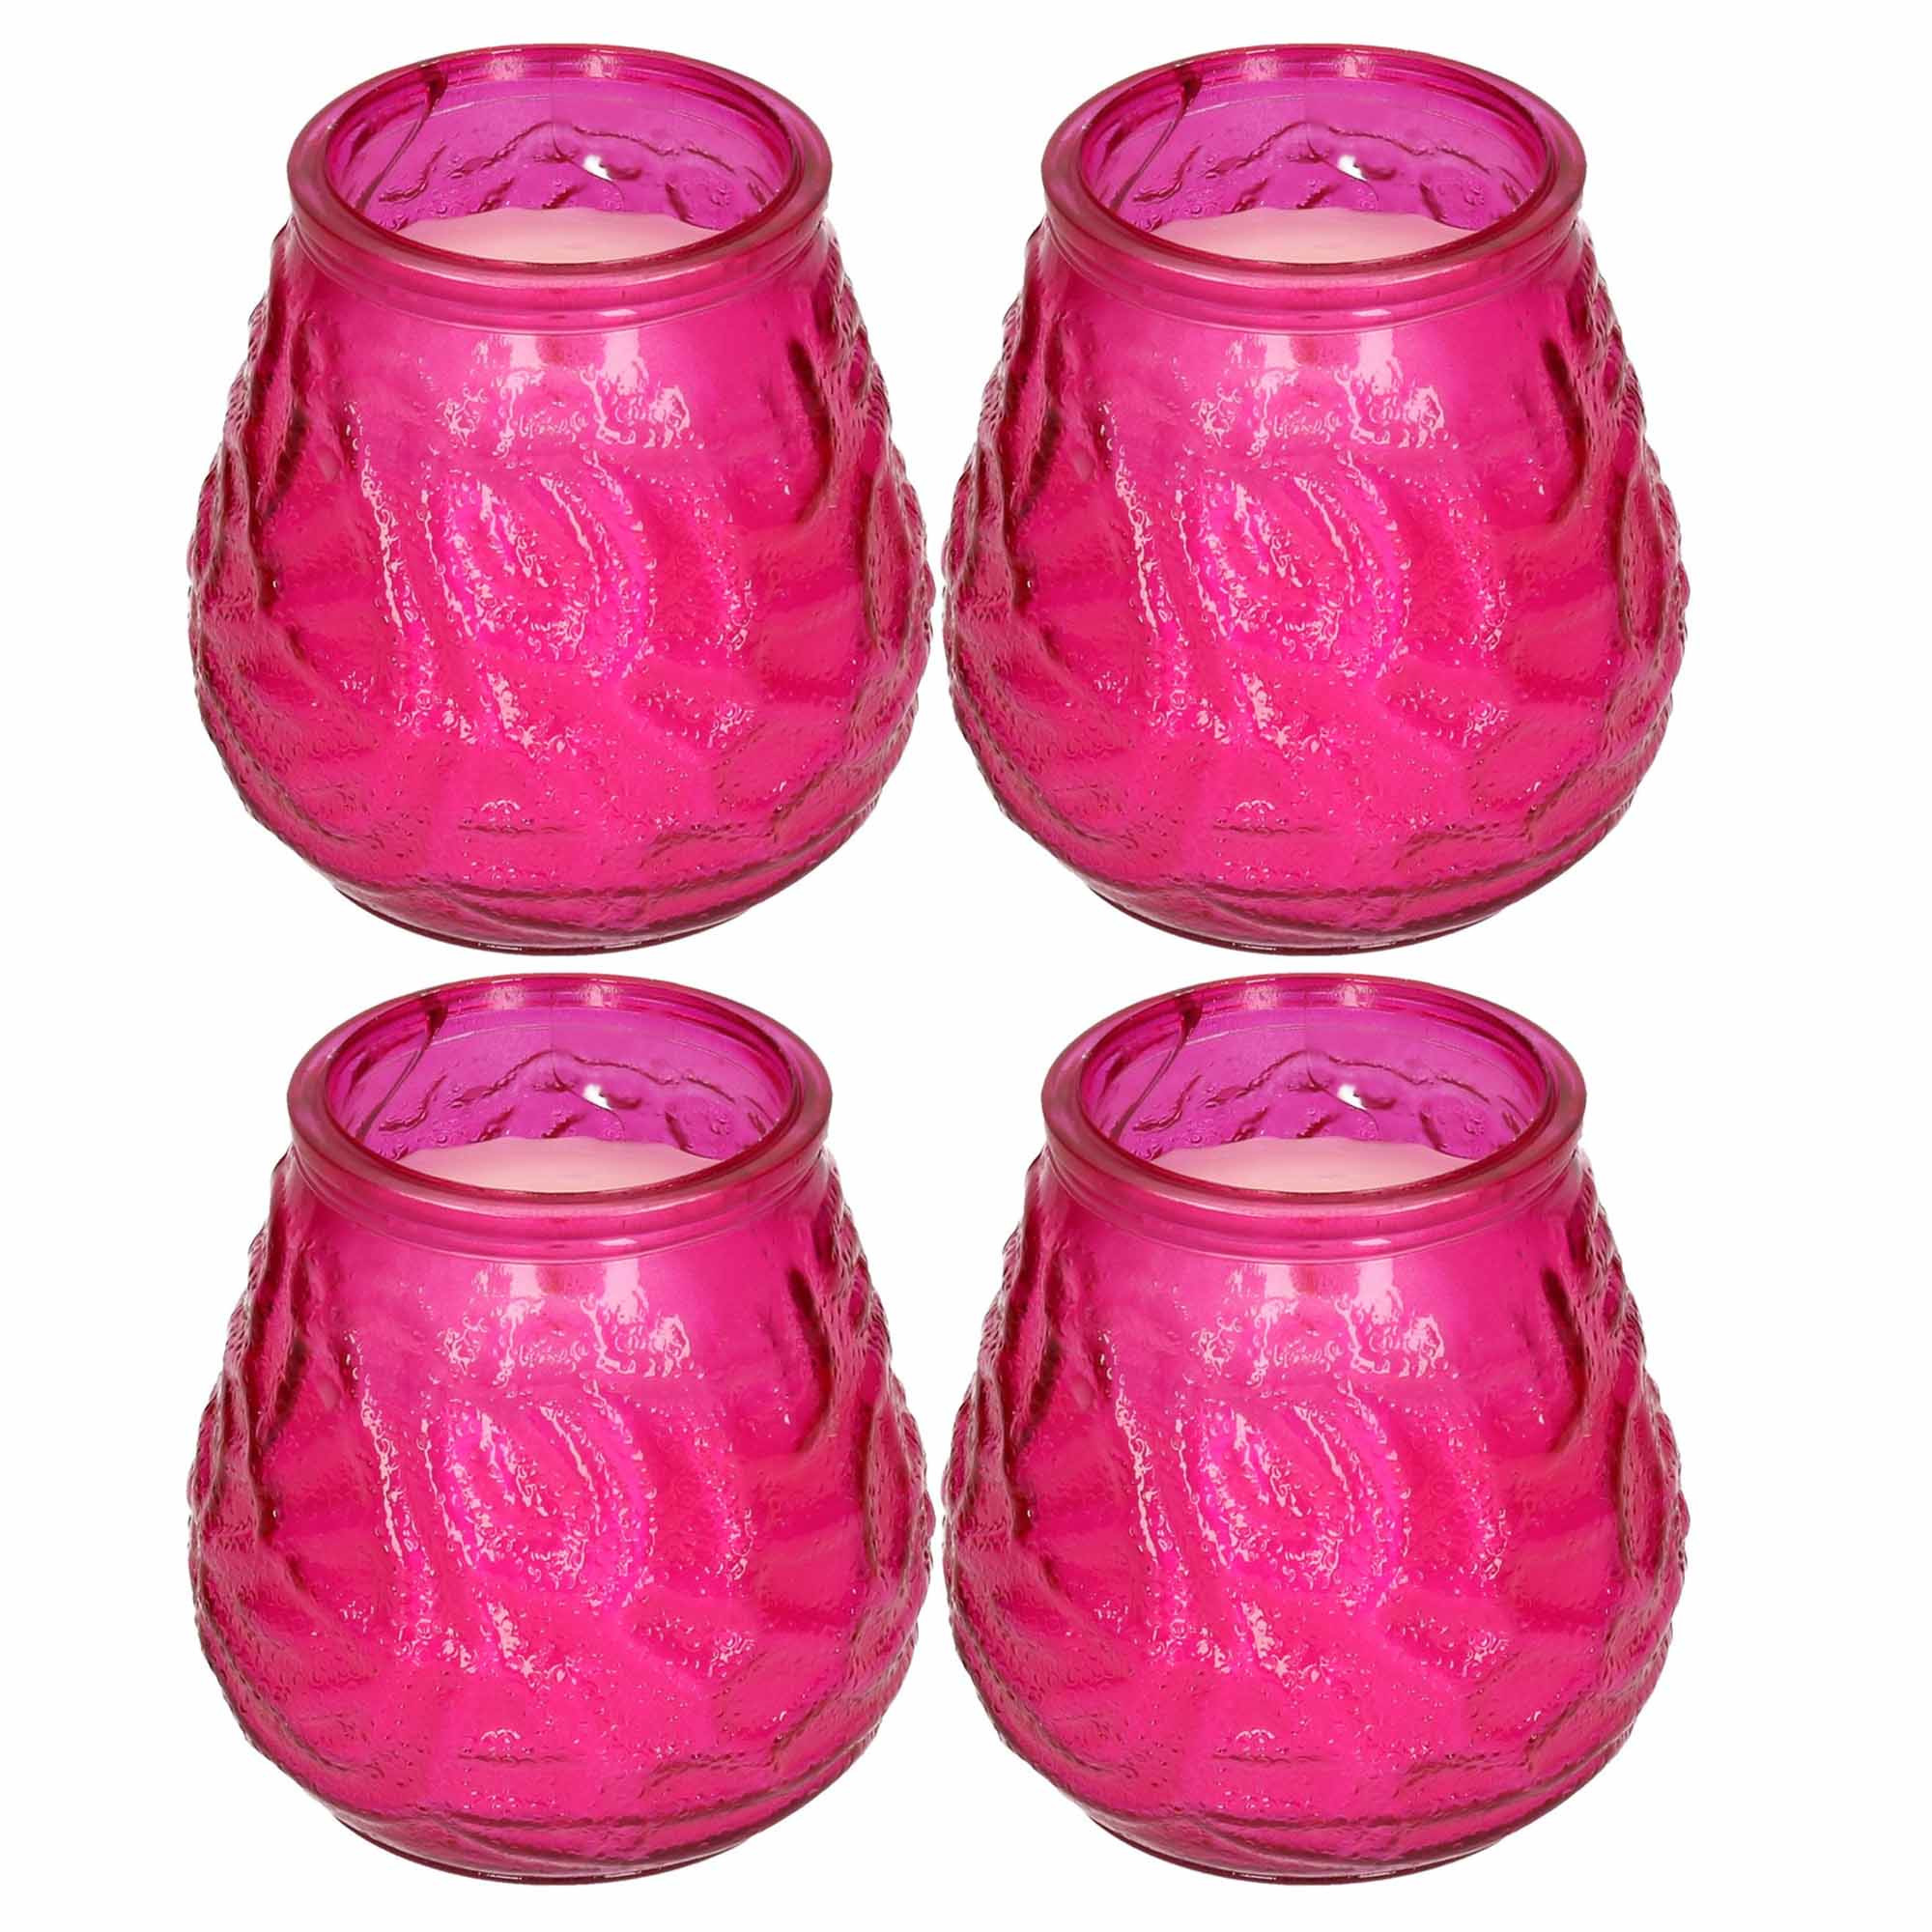 Windlicht geurkaars 4x roze glas 48 branduren citrusgeur